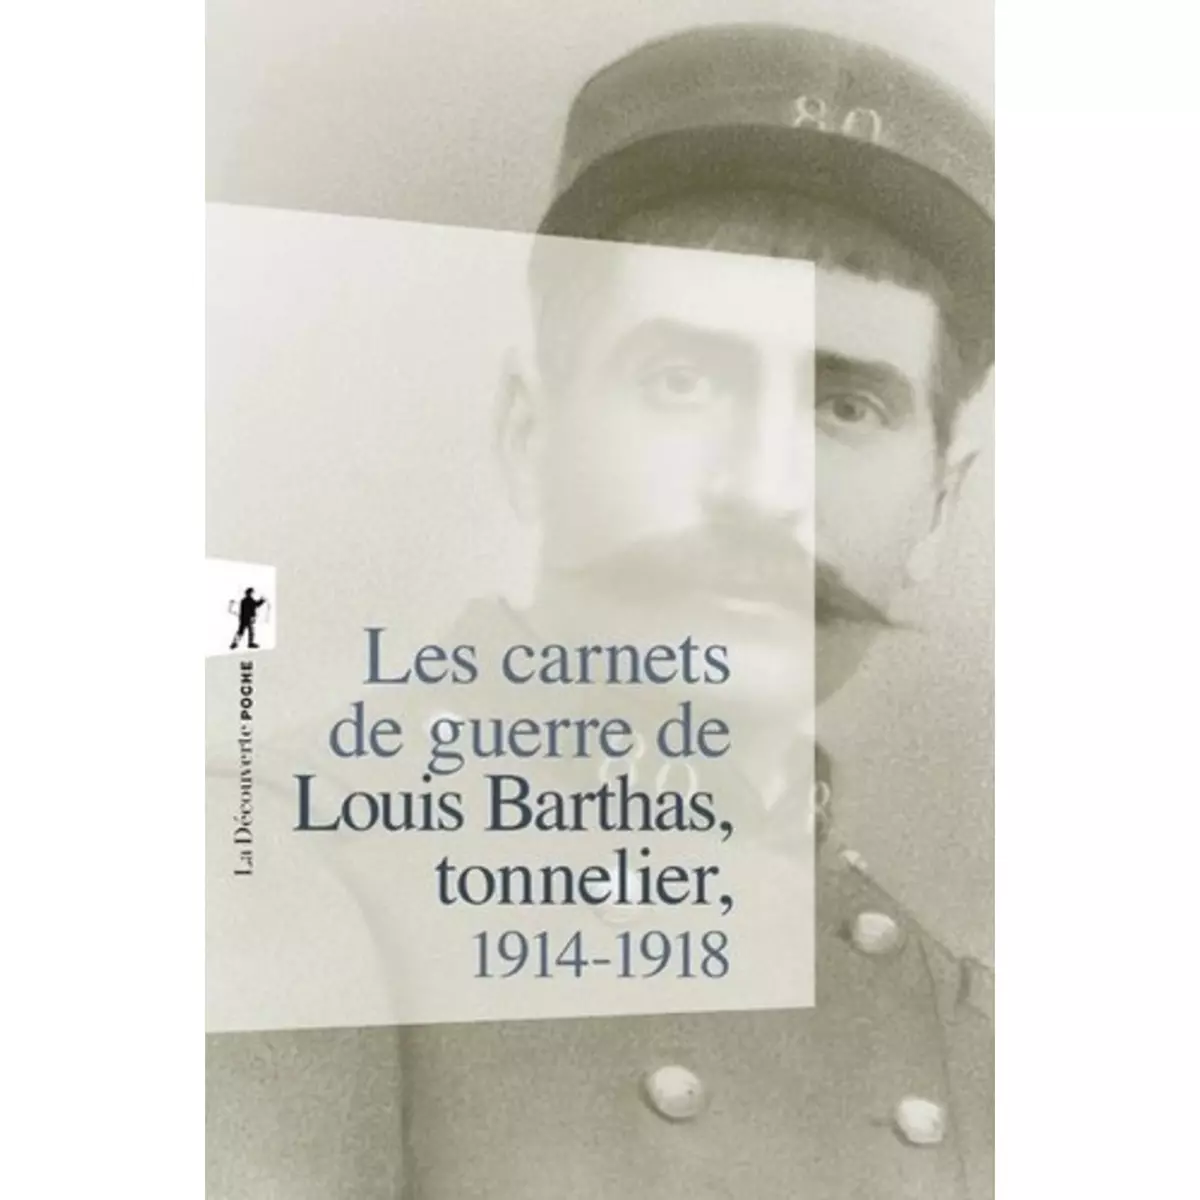  LES CARNETS DE GUERRE DE LOUIS BARTHAS, TONNELIER, 1914-1918. EDITION DU CENTENAIRE, Barthas Louis